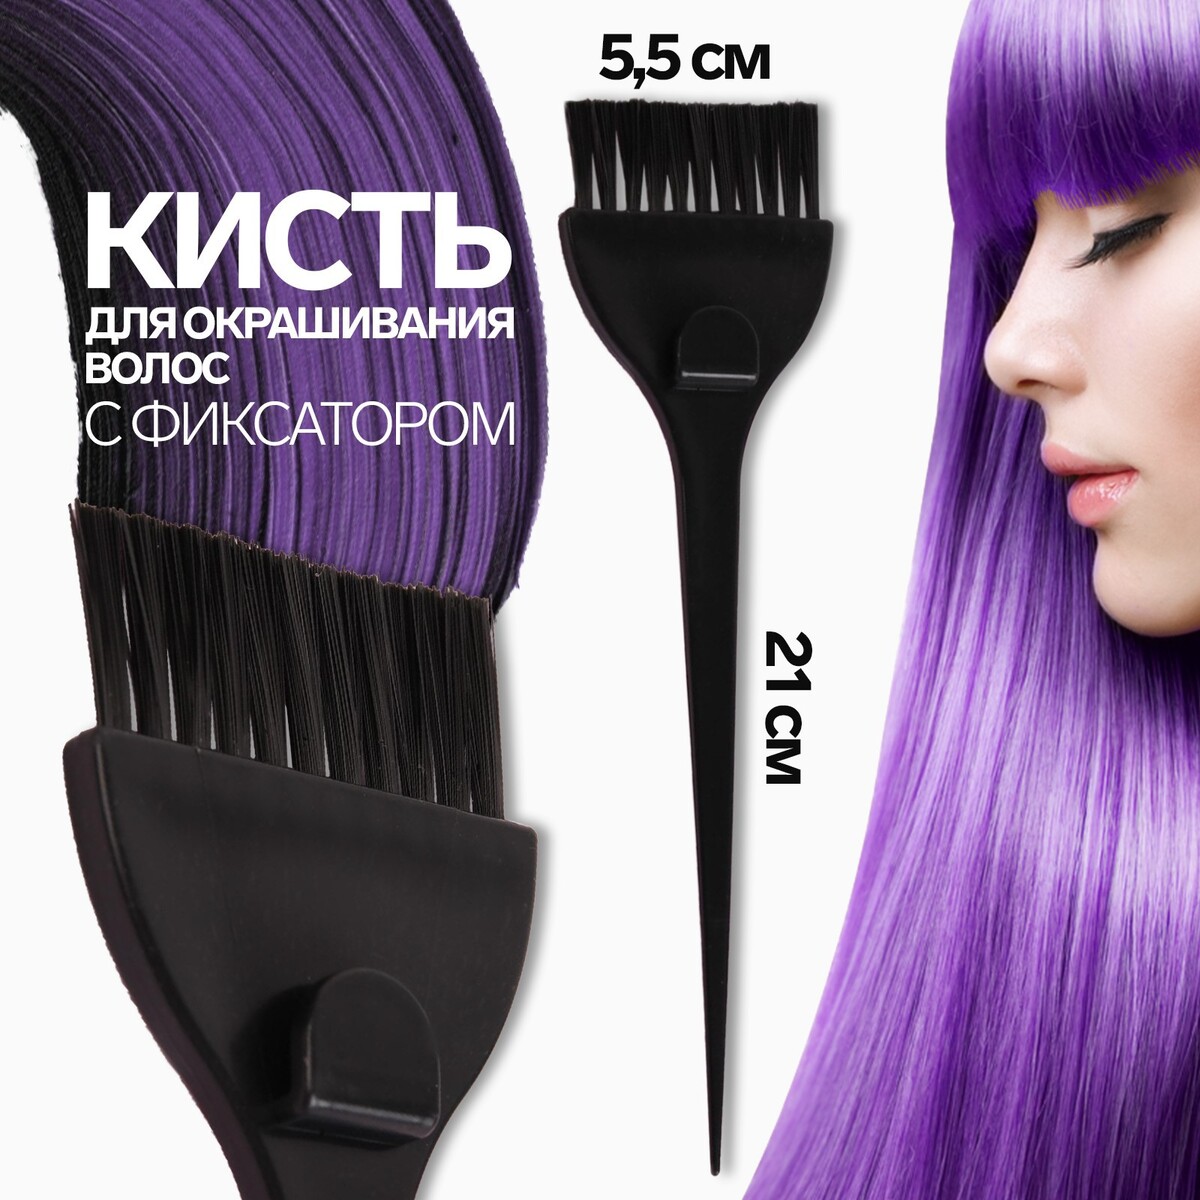 Кисть для окрашивания волос с фиксатором, 21 х 5,5 см, цвет черный расческа кисть для окрашивания 20 5 × 7 см